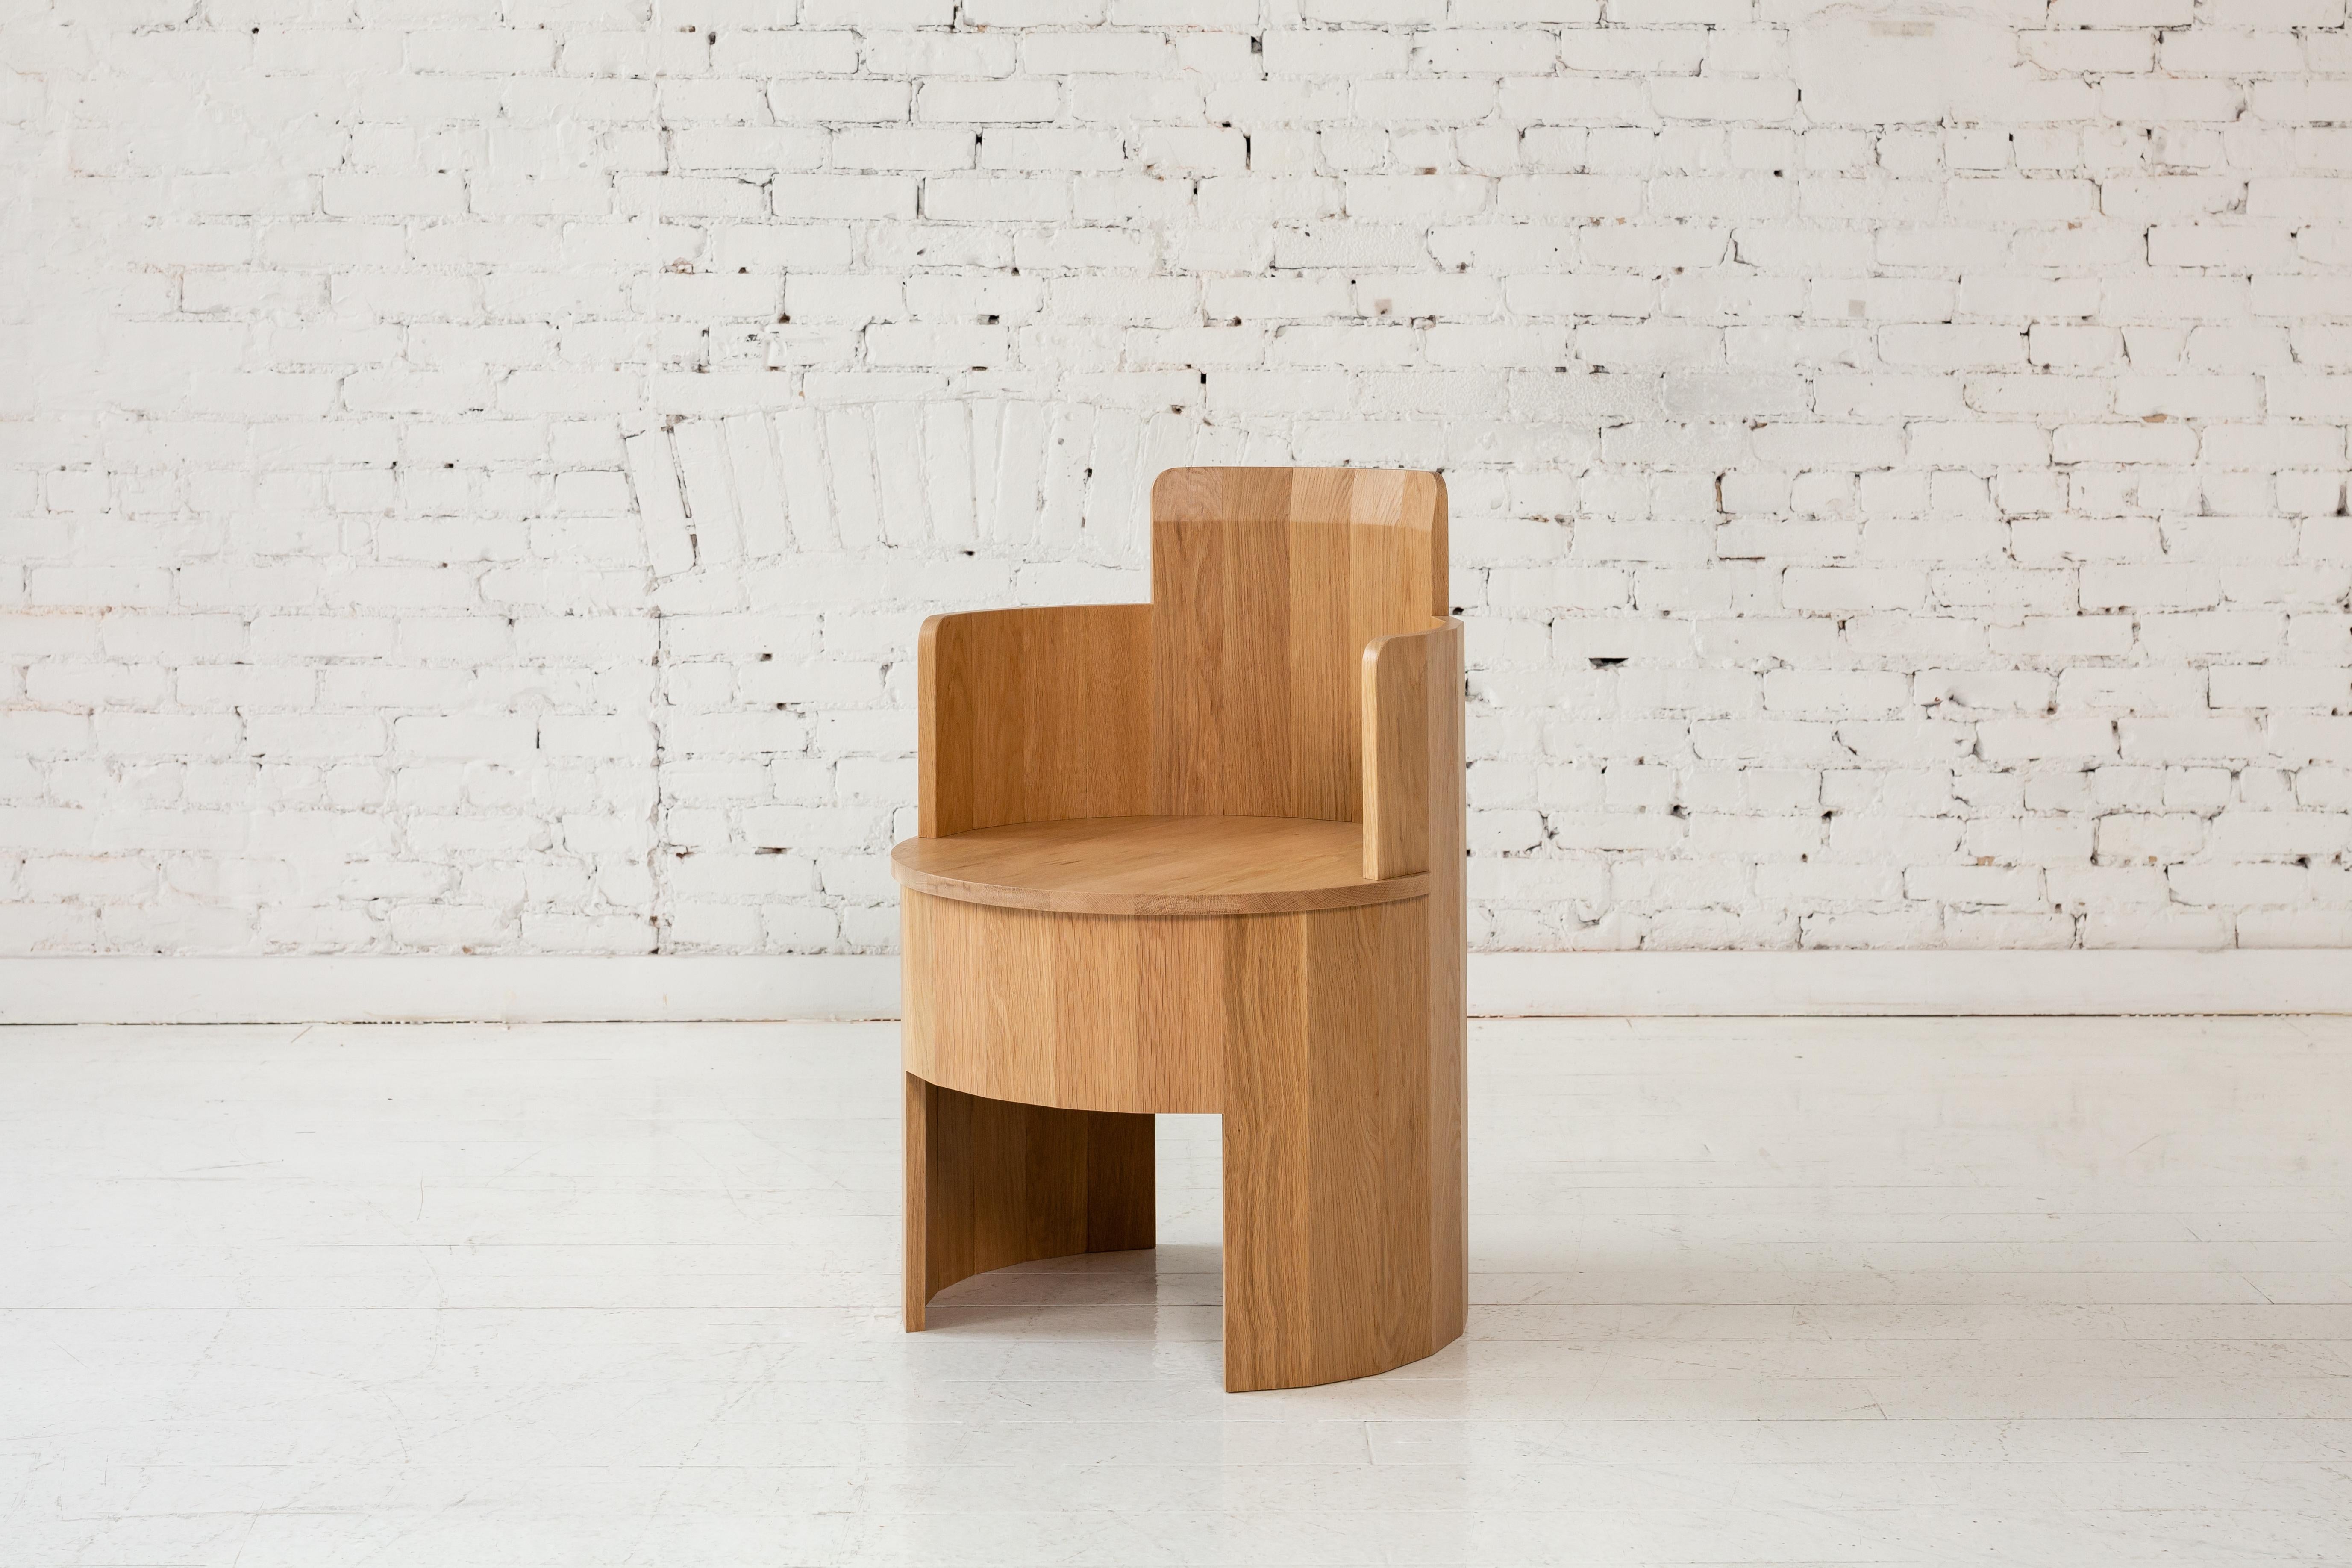 Cette chaise d'appoint en bois fait partie de la nouvelle Collection Dining Cooperage. Chaque pièce présente de grands éléments ronds facettés qui, avec son homonyme, font référence au métier traditionnel de tonnelier qui consiste à fabriquer des